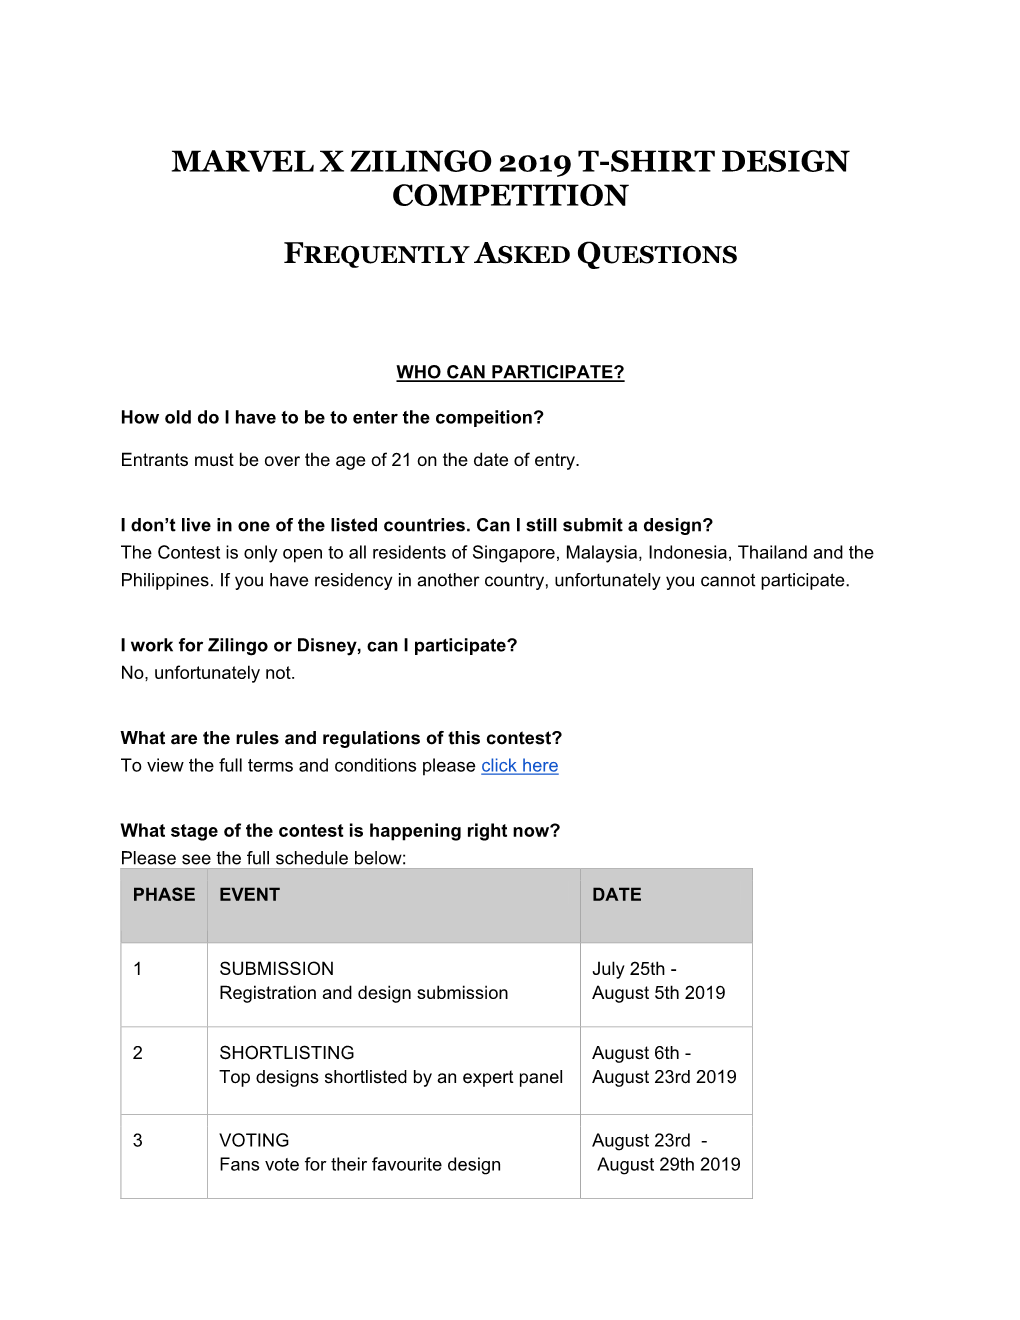 Marvel X Zilingo 2019 T-Shirt Design Competition